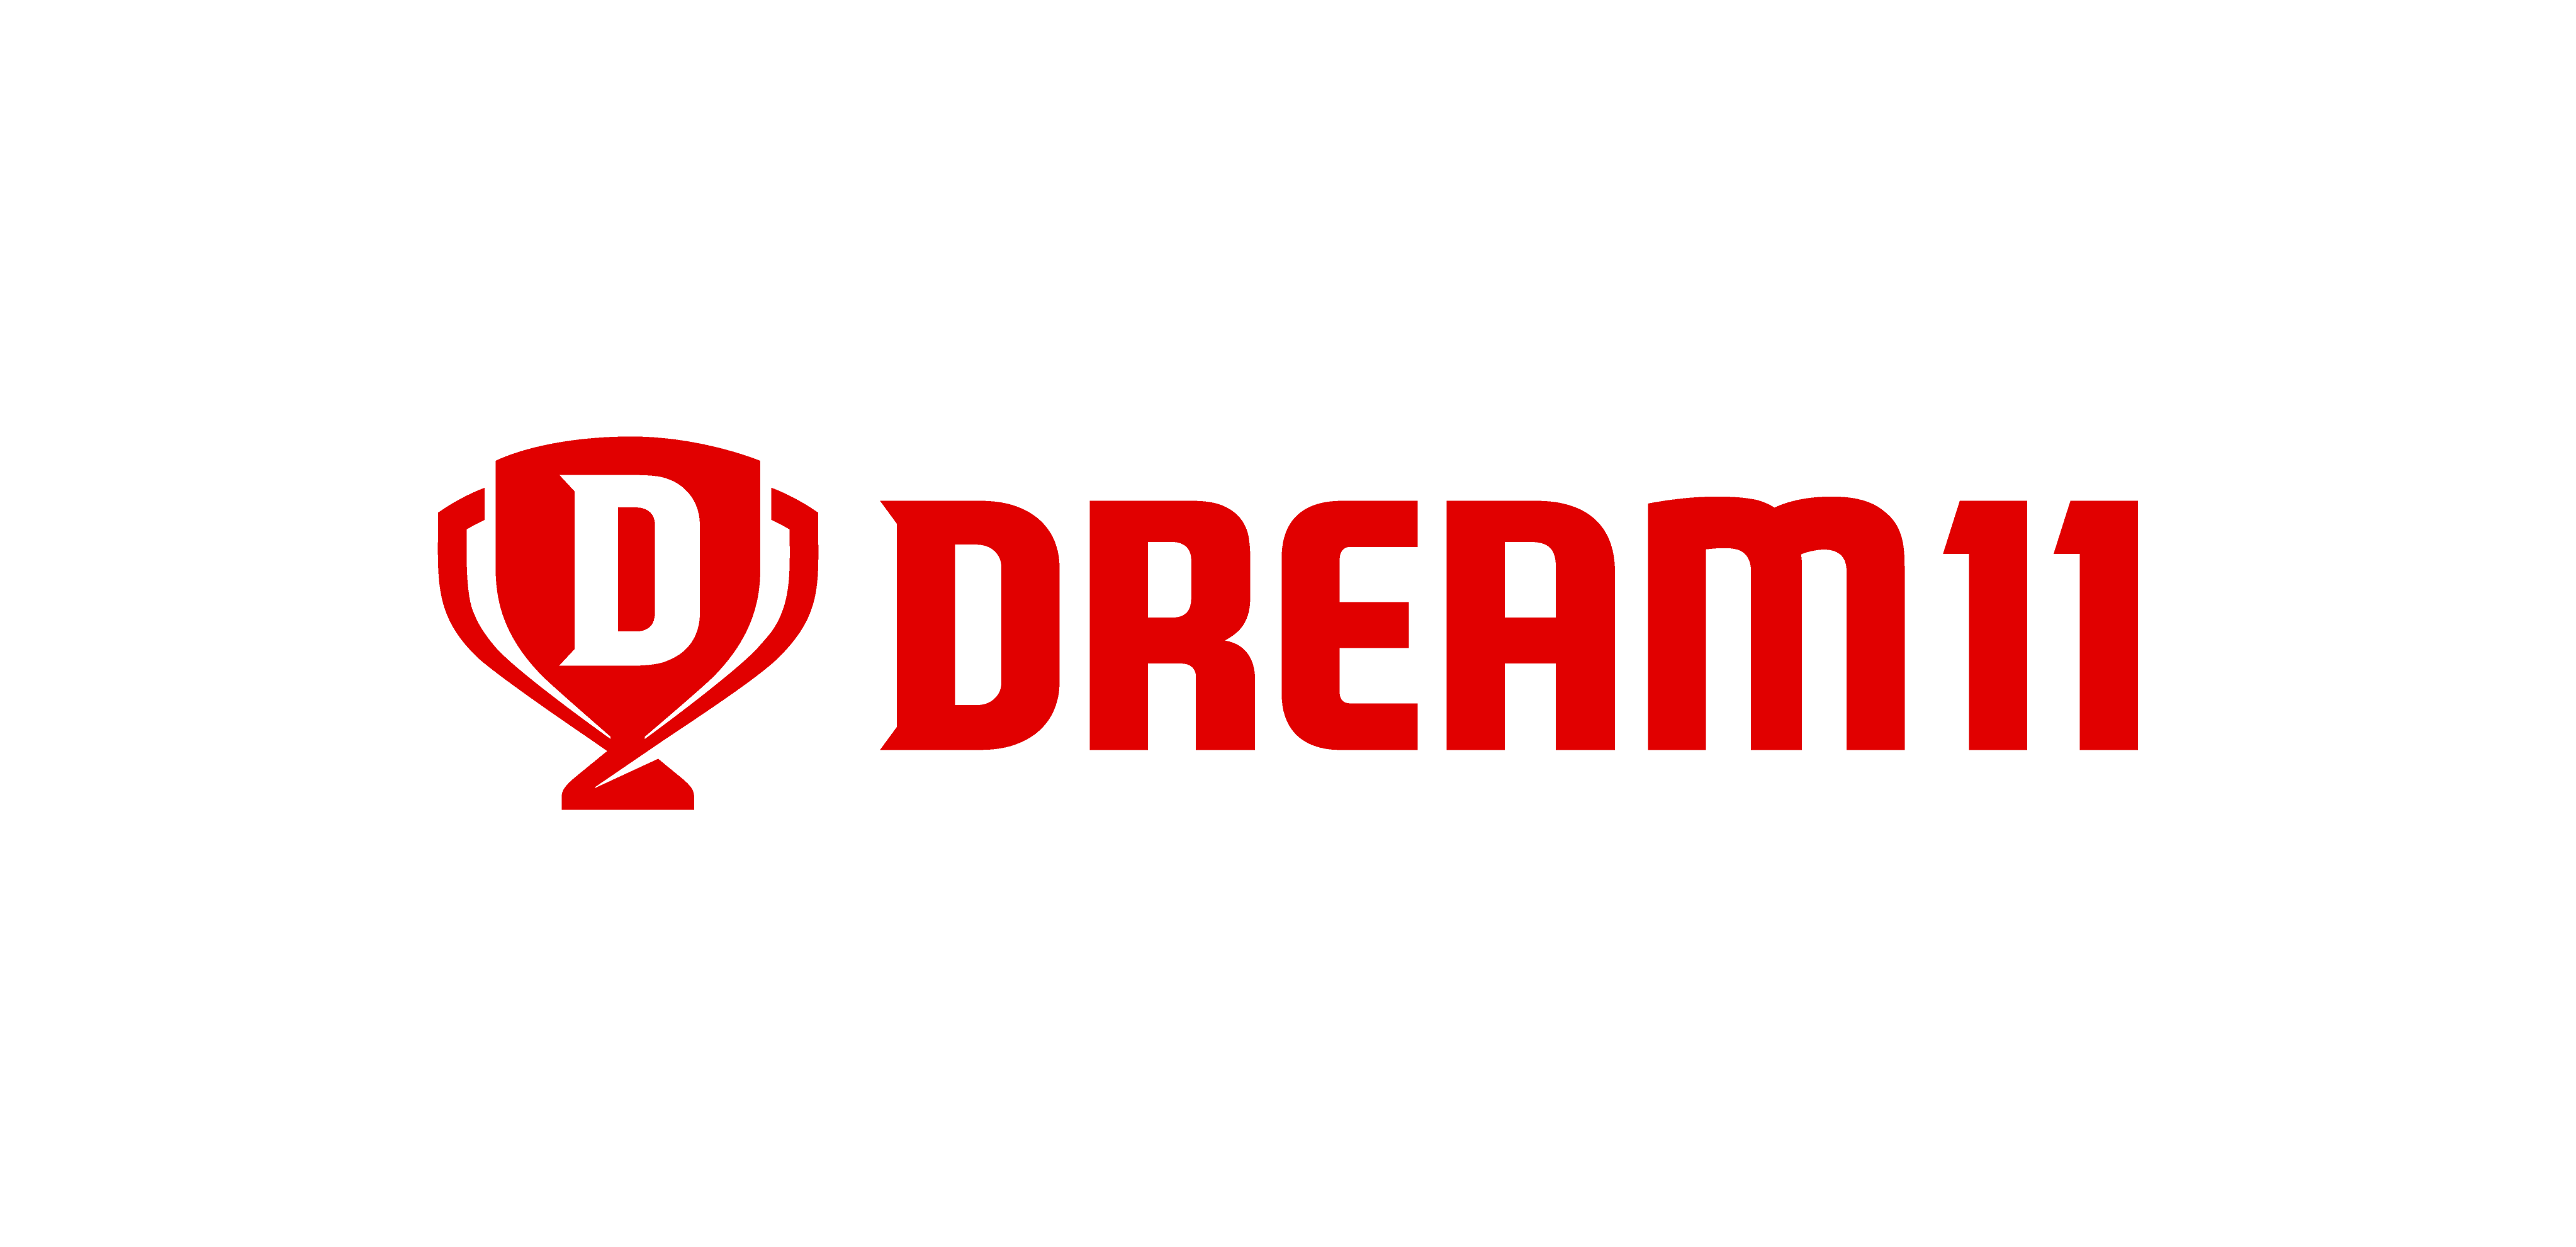 Dream11 - Wikipedia